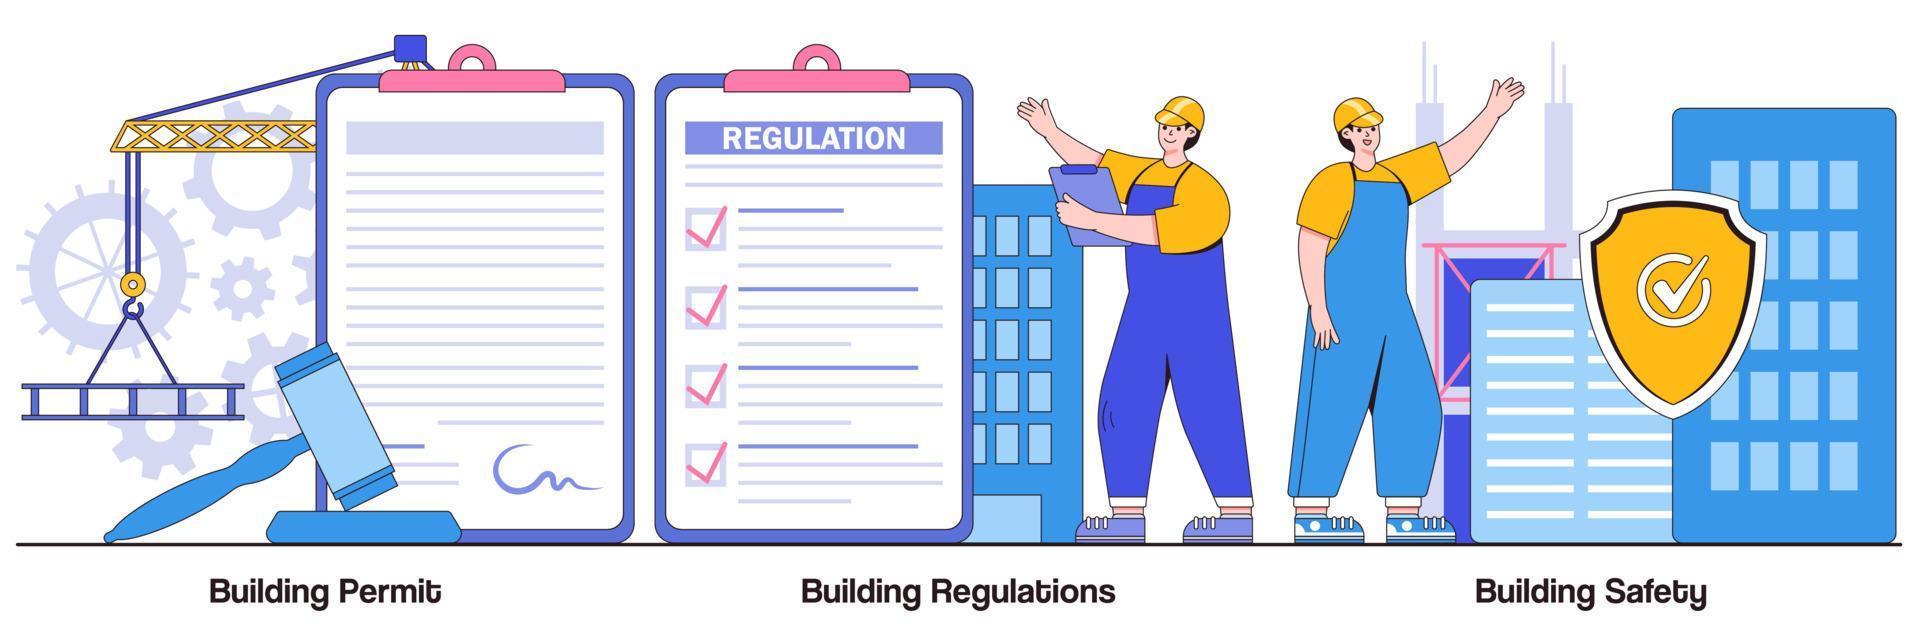 bouwvergunningen, voorschriften en geïllustreerd veiligheidspakket vector